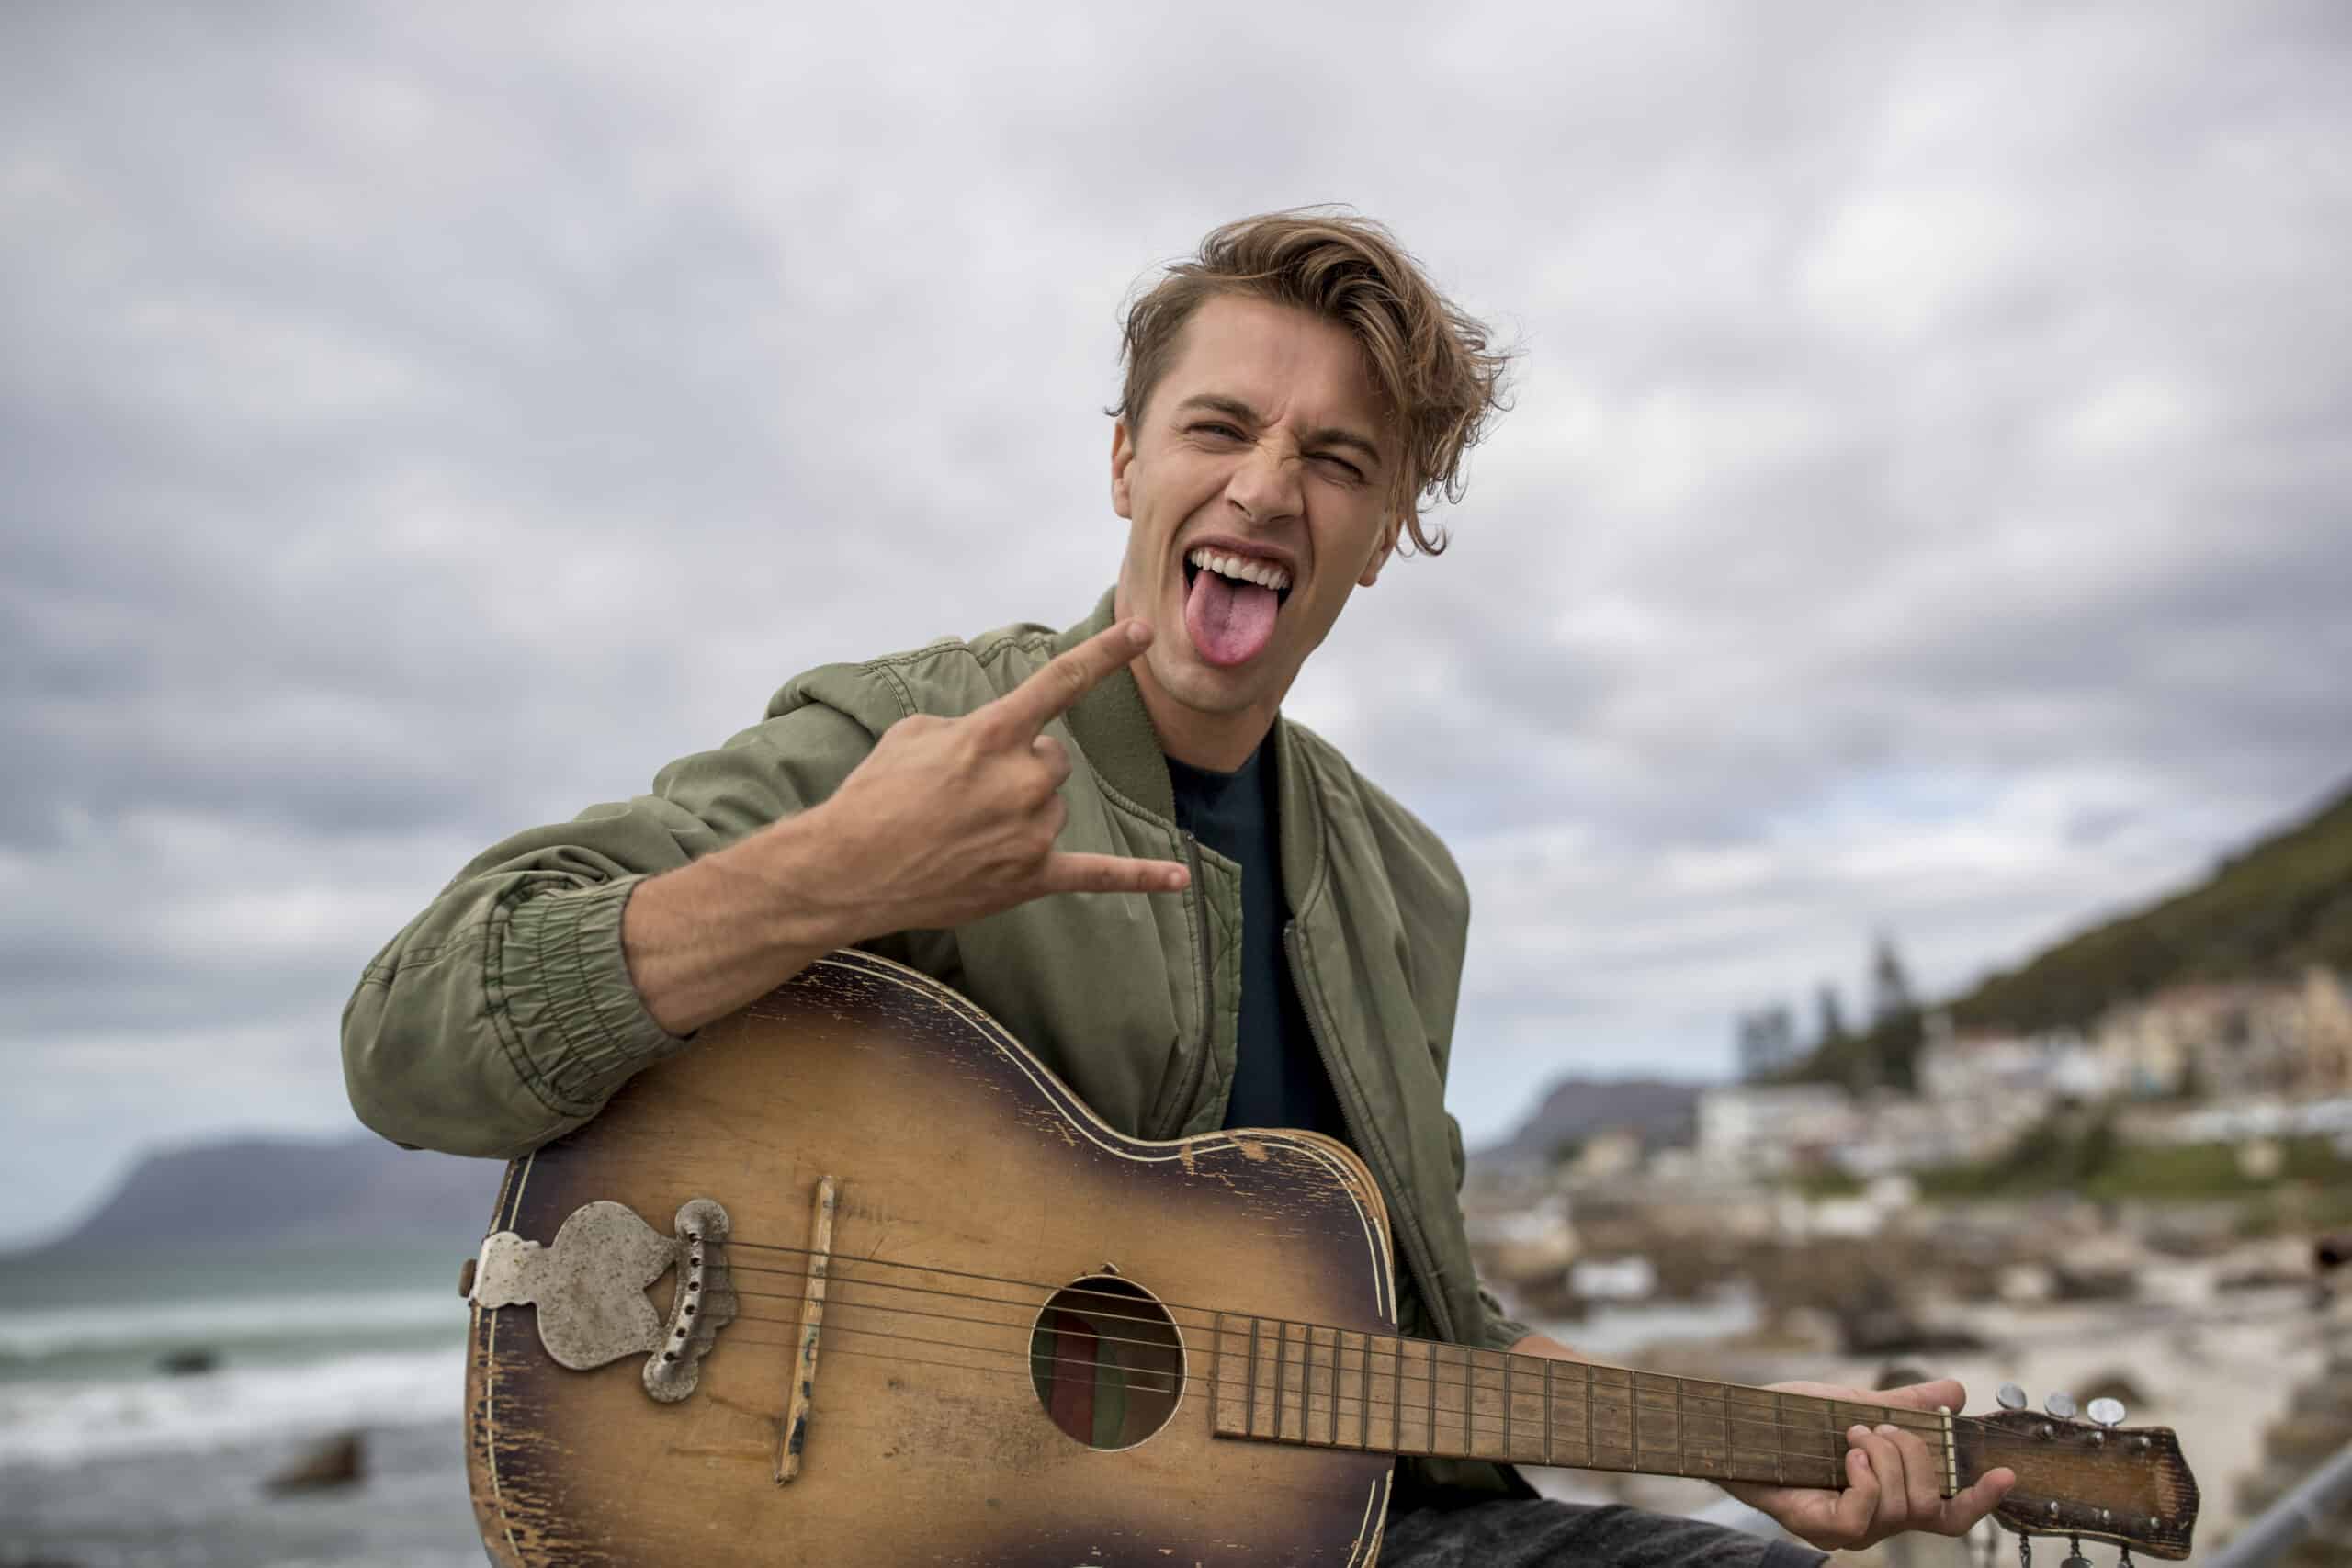 Ein fröhlicher junger Mann mit zerzaustem Haar spielt an einem Strand eine Akustikgitarre, macht eine verspielte Rock-and-Roll-Handbewegung und streckt die Zunge heraus, im Hintergrund sind bewölkter Himmel und eine Küstenlinie zu sehen. © Fotografie Tomas Rodriguez